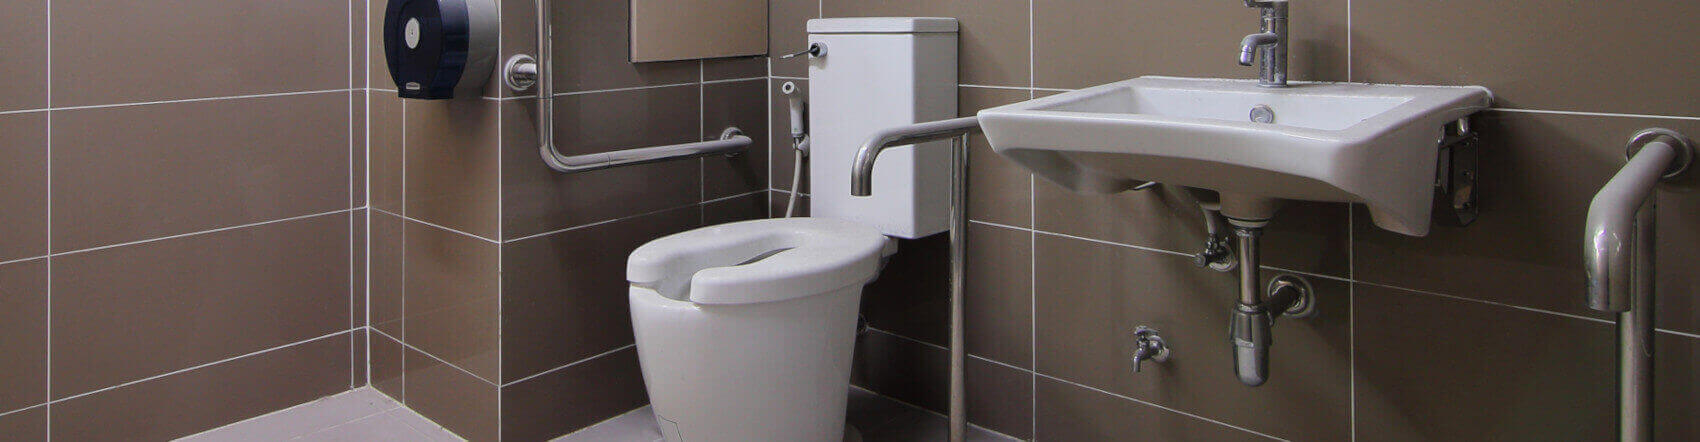 Ein Badezimmer ist mit einer Toilettensitzerhöhung